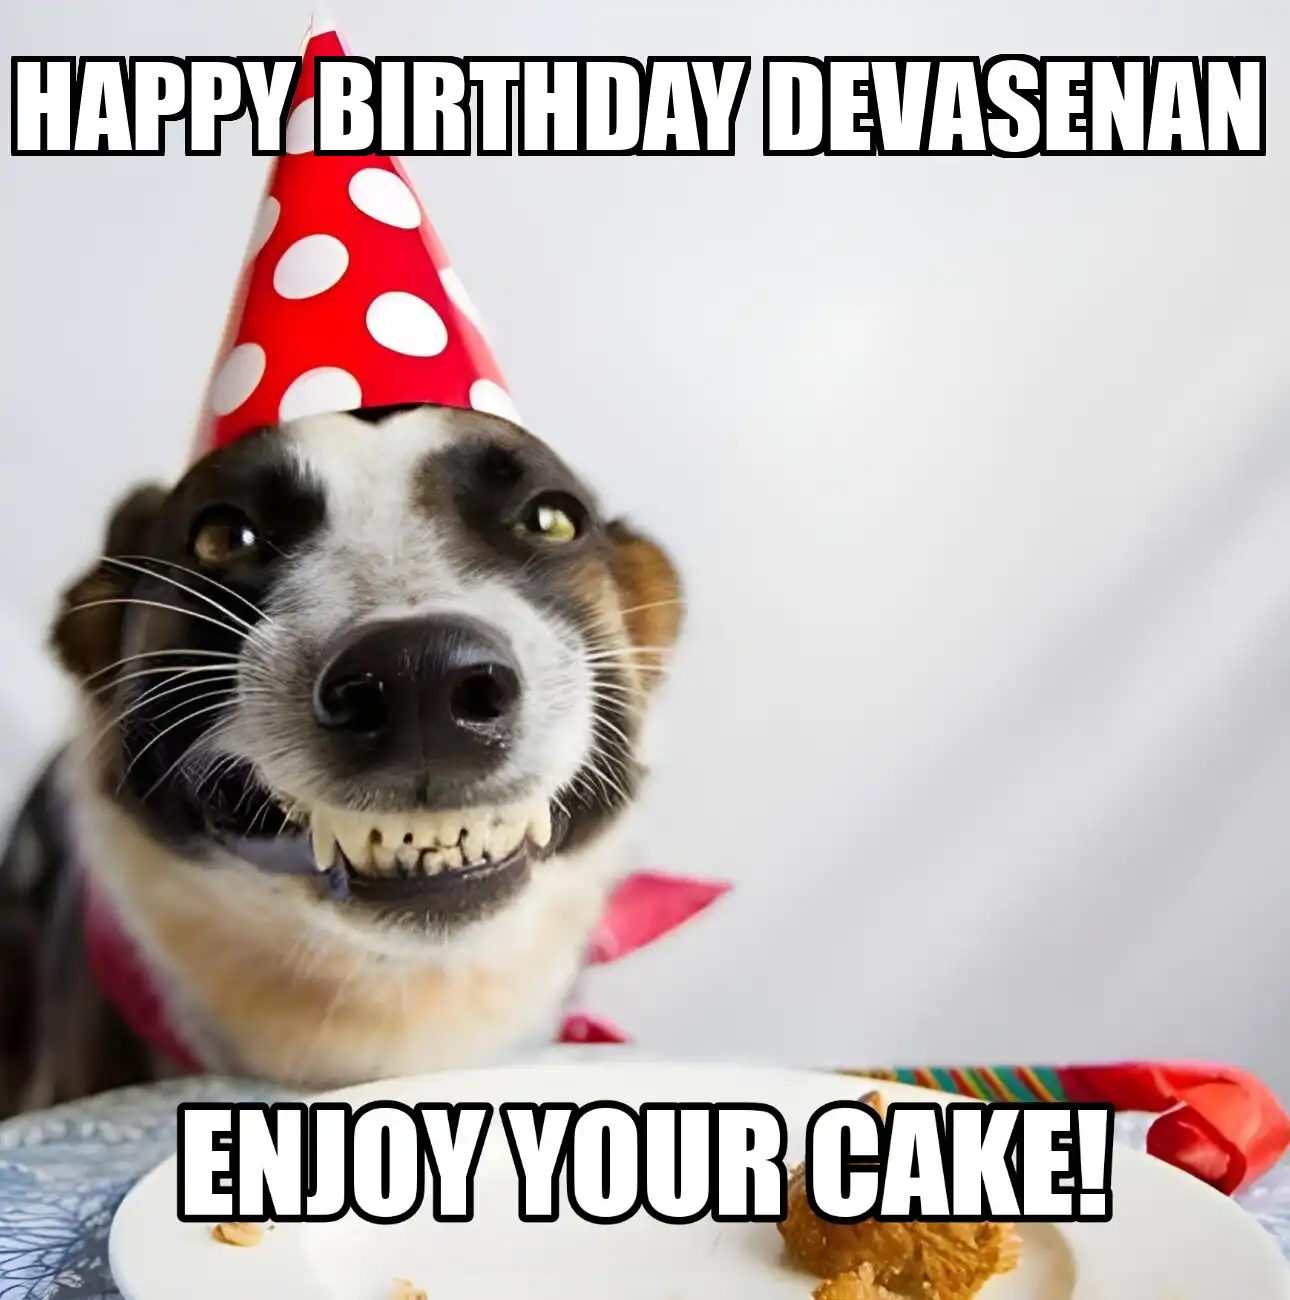 Happy Birthday Devasenan Enjoy Your Cake Dog Meme